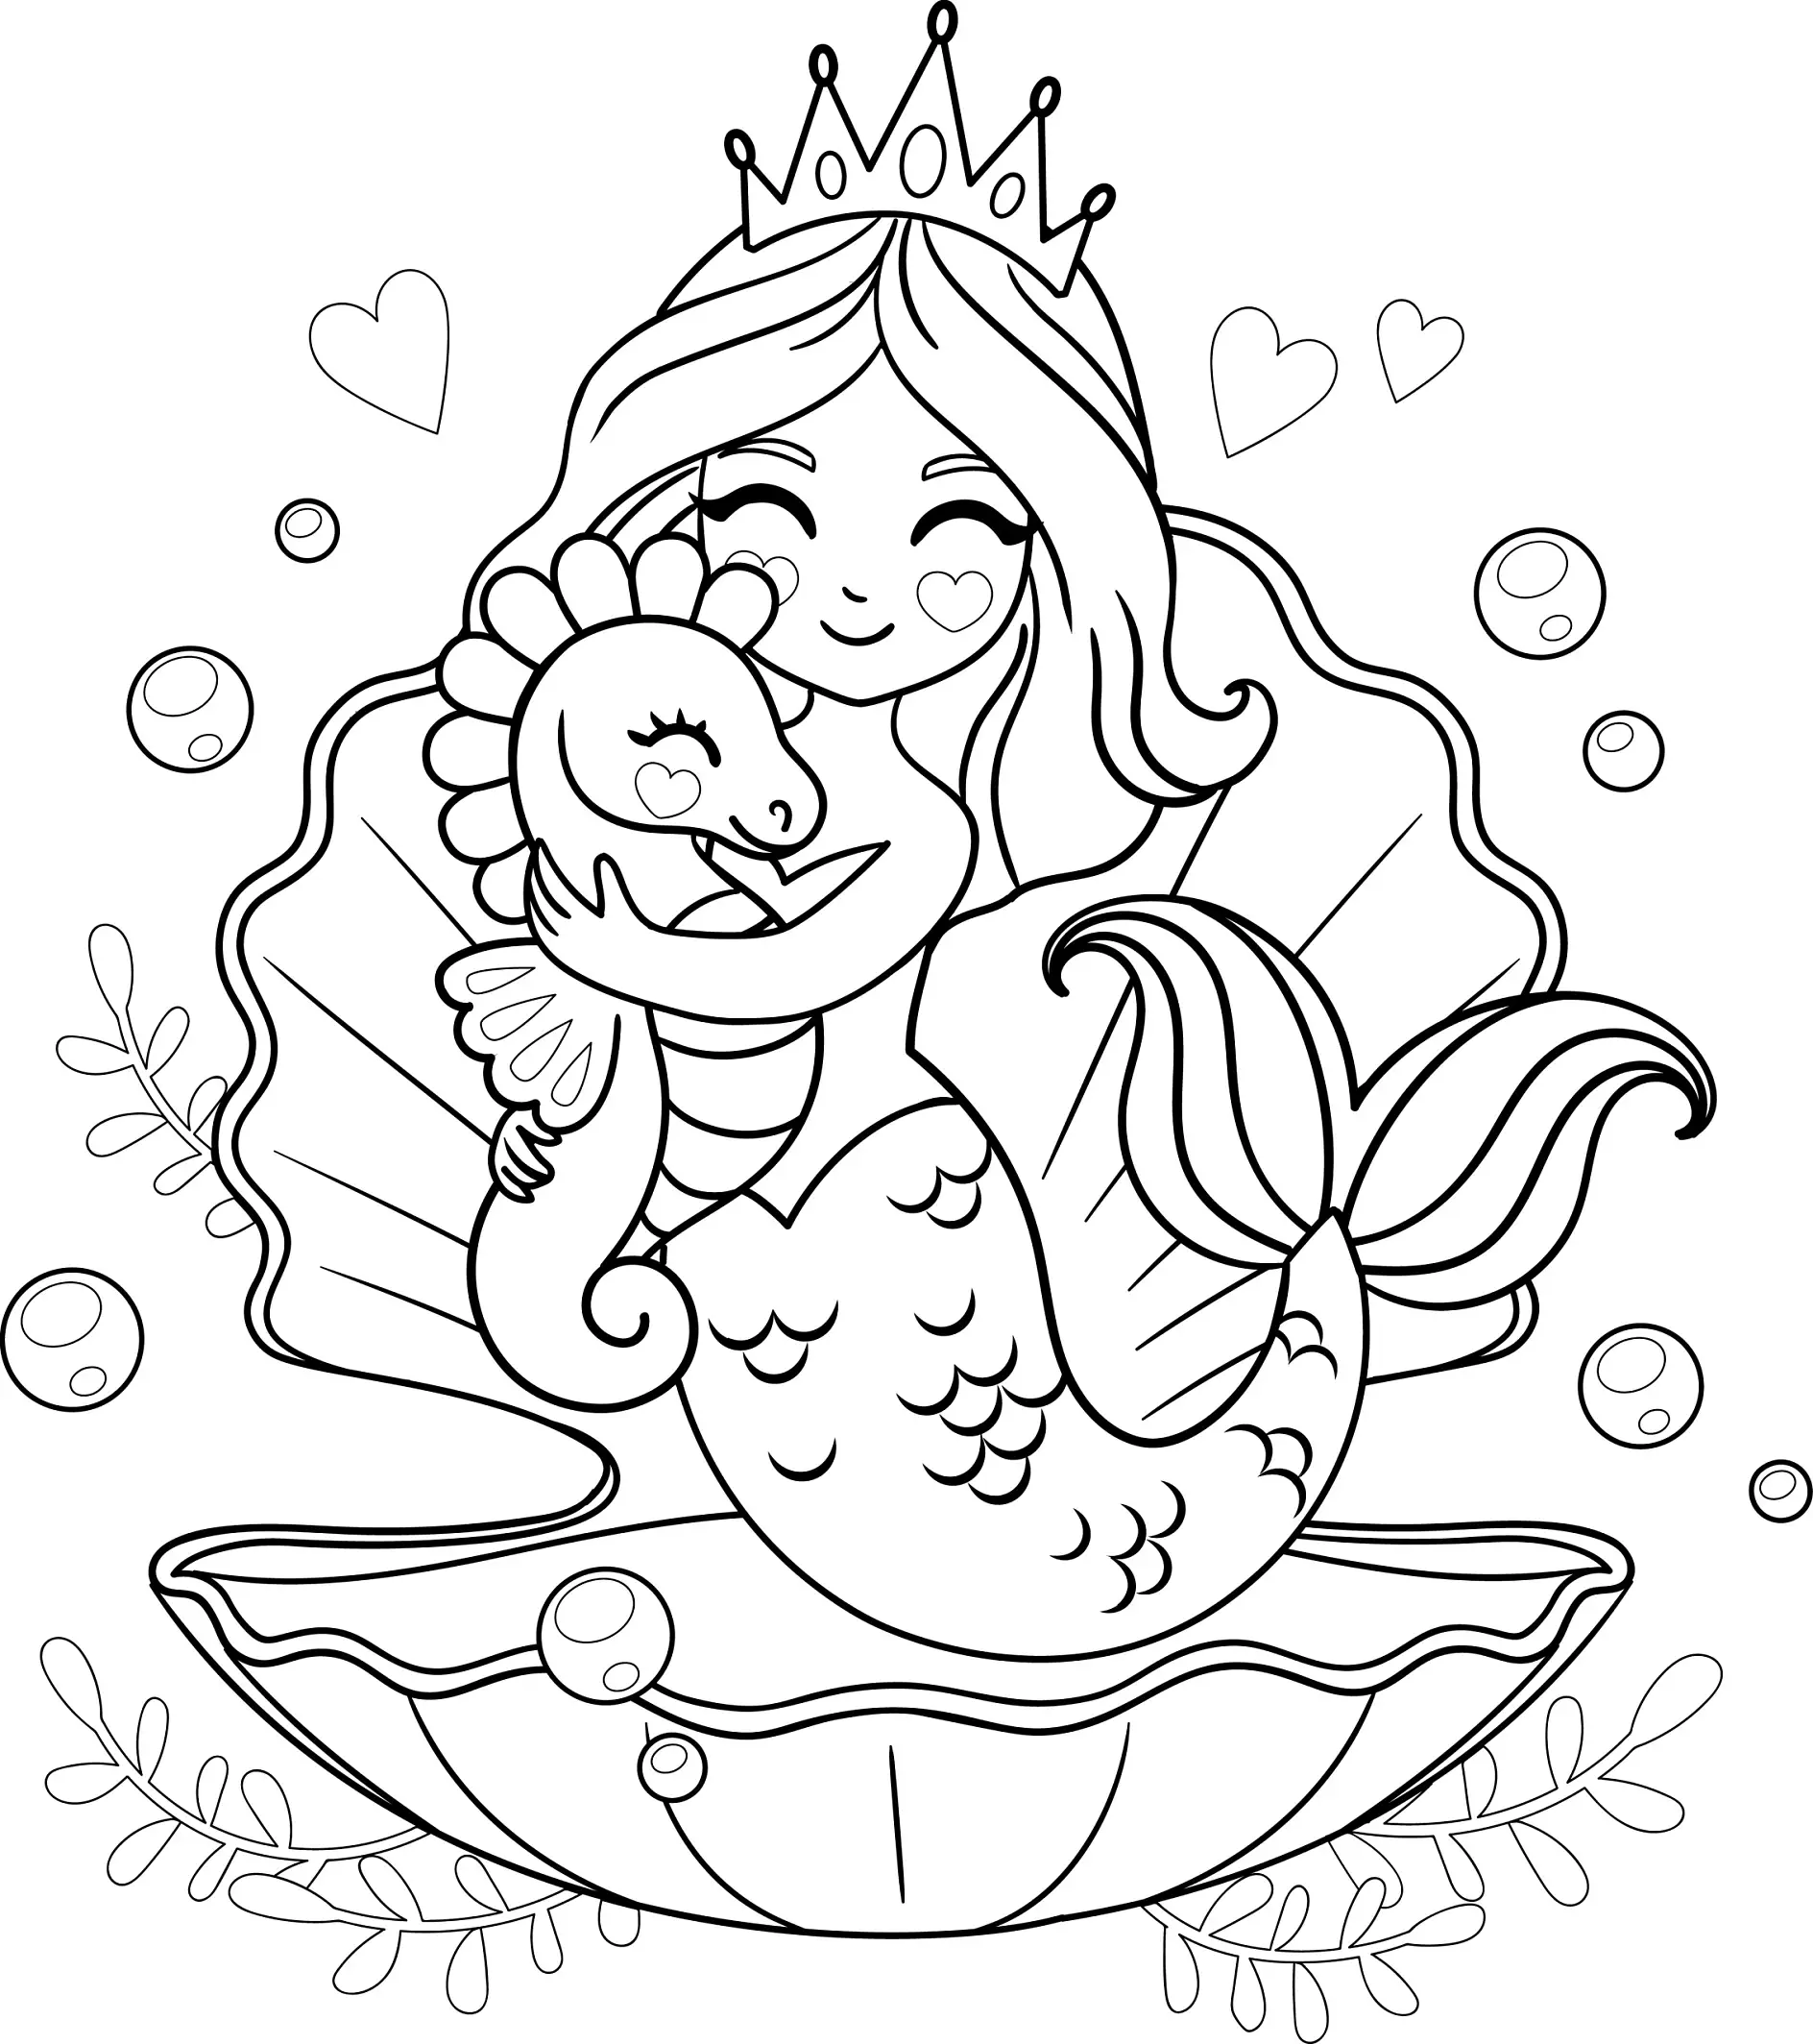 Ausmalbild Meerjungfrau mit Krone umarmt Seepferdchen auf großer Muschel